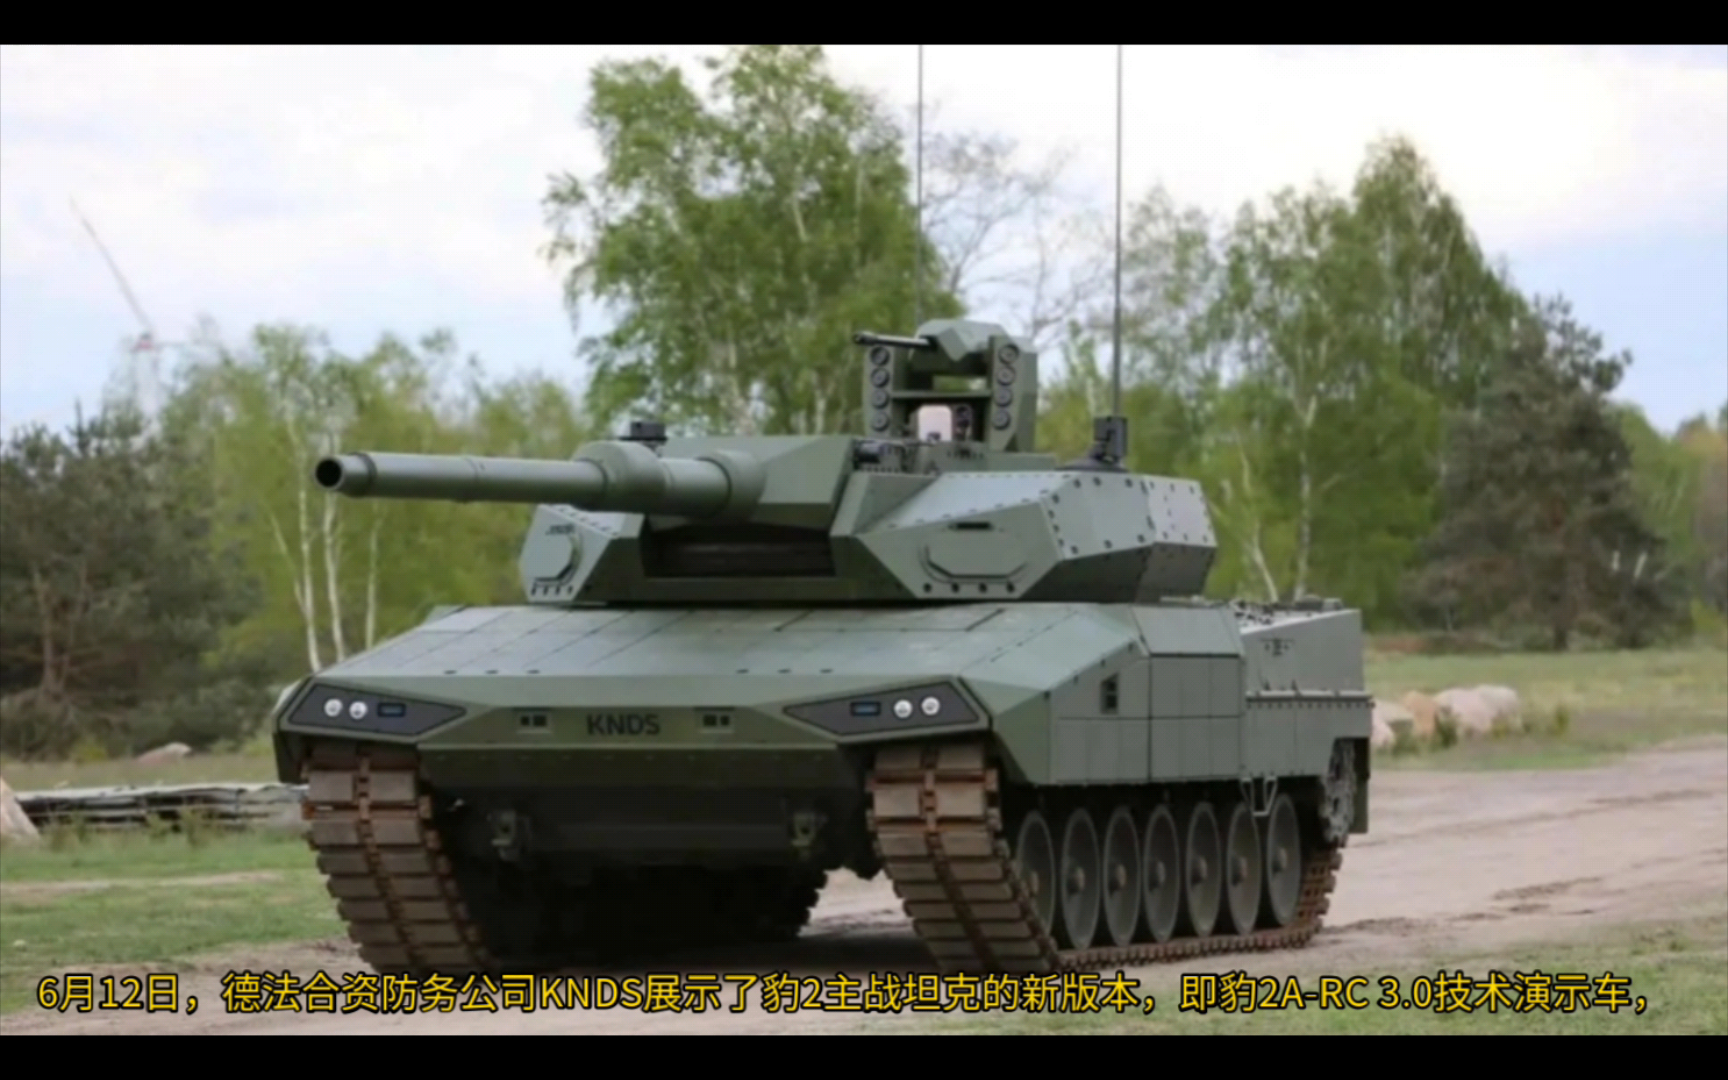 德法KNDS公司正式推出新型豹2坦克 配备无人炮塔 三名乘员，可安装140毫米火炮，具备对付无人机的能力